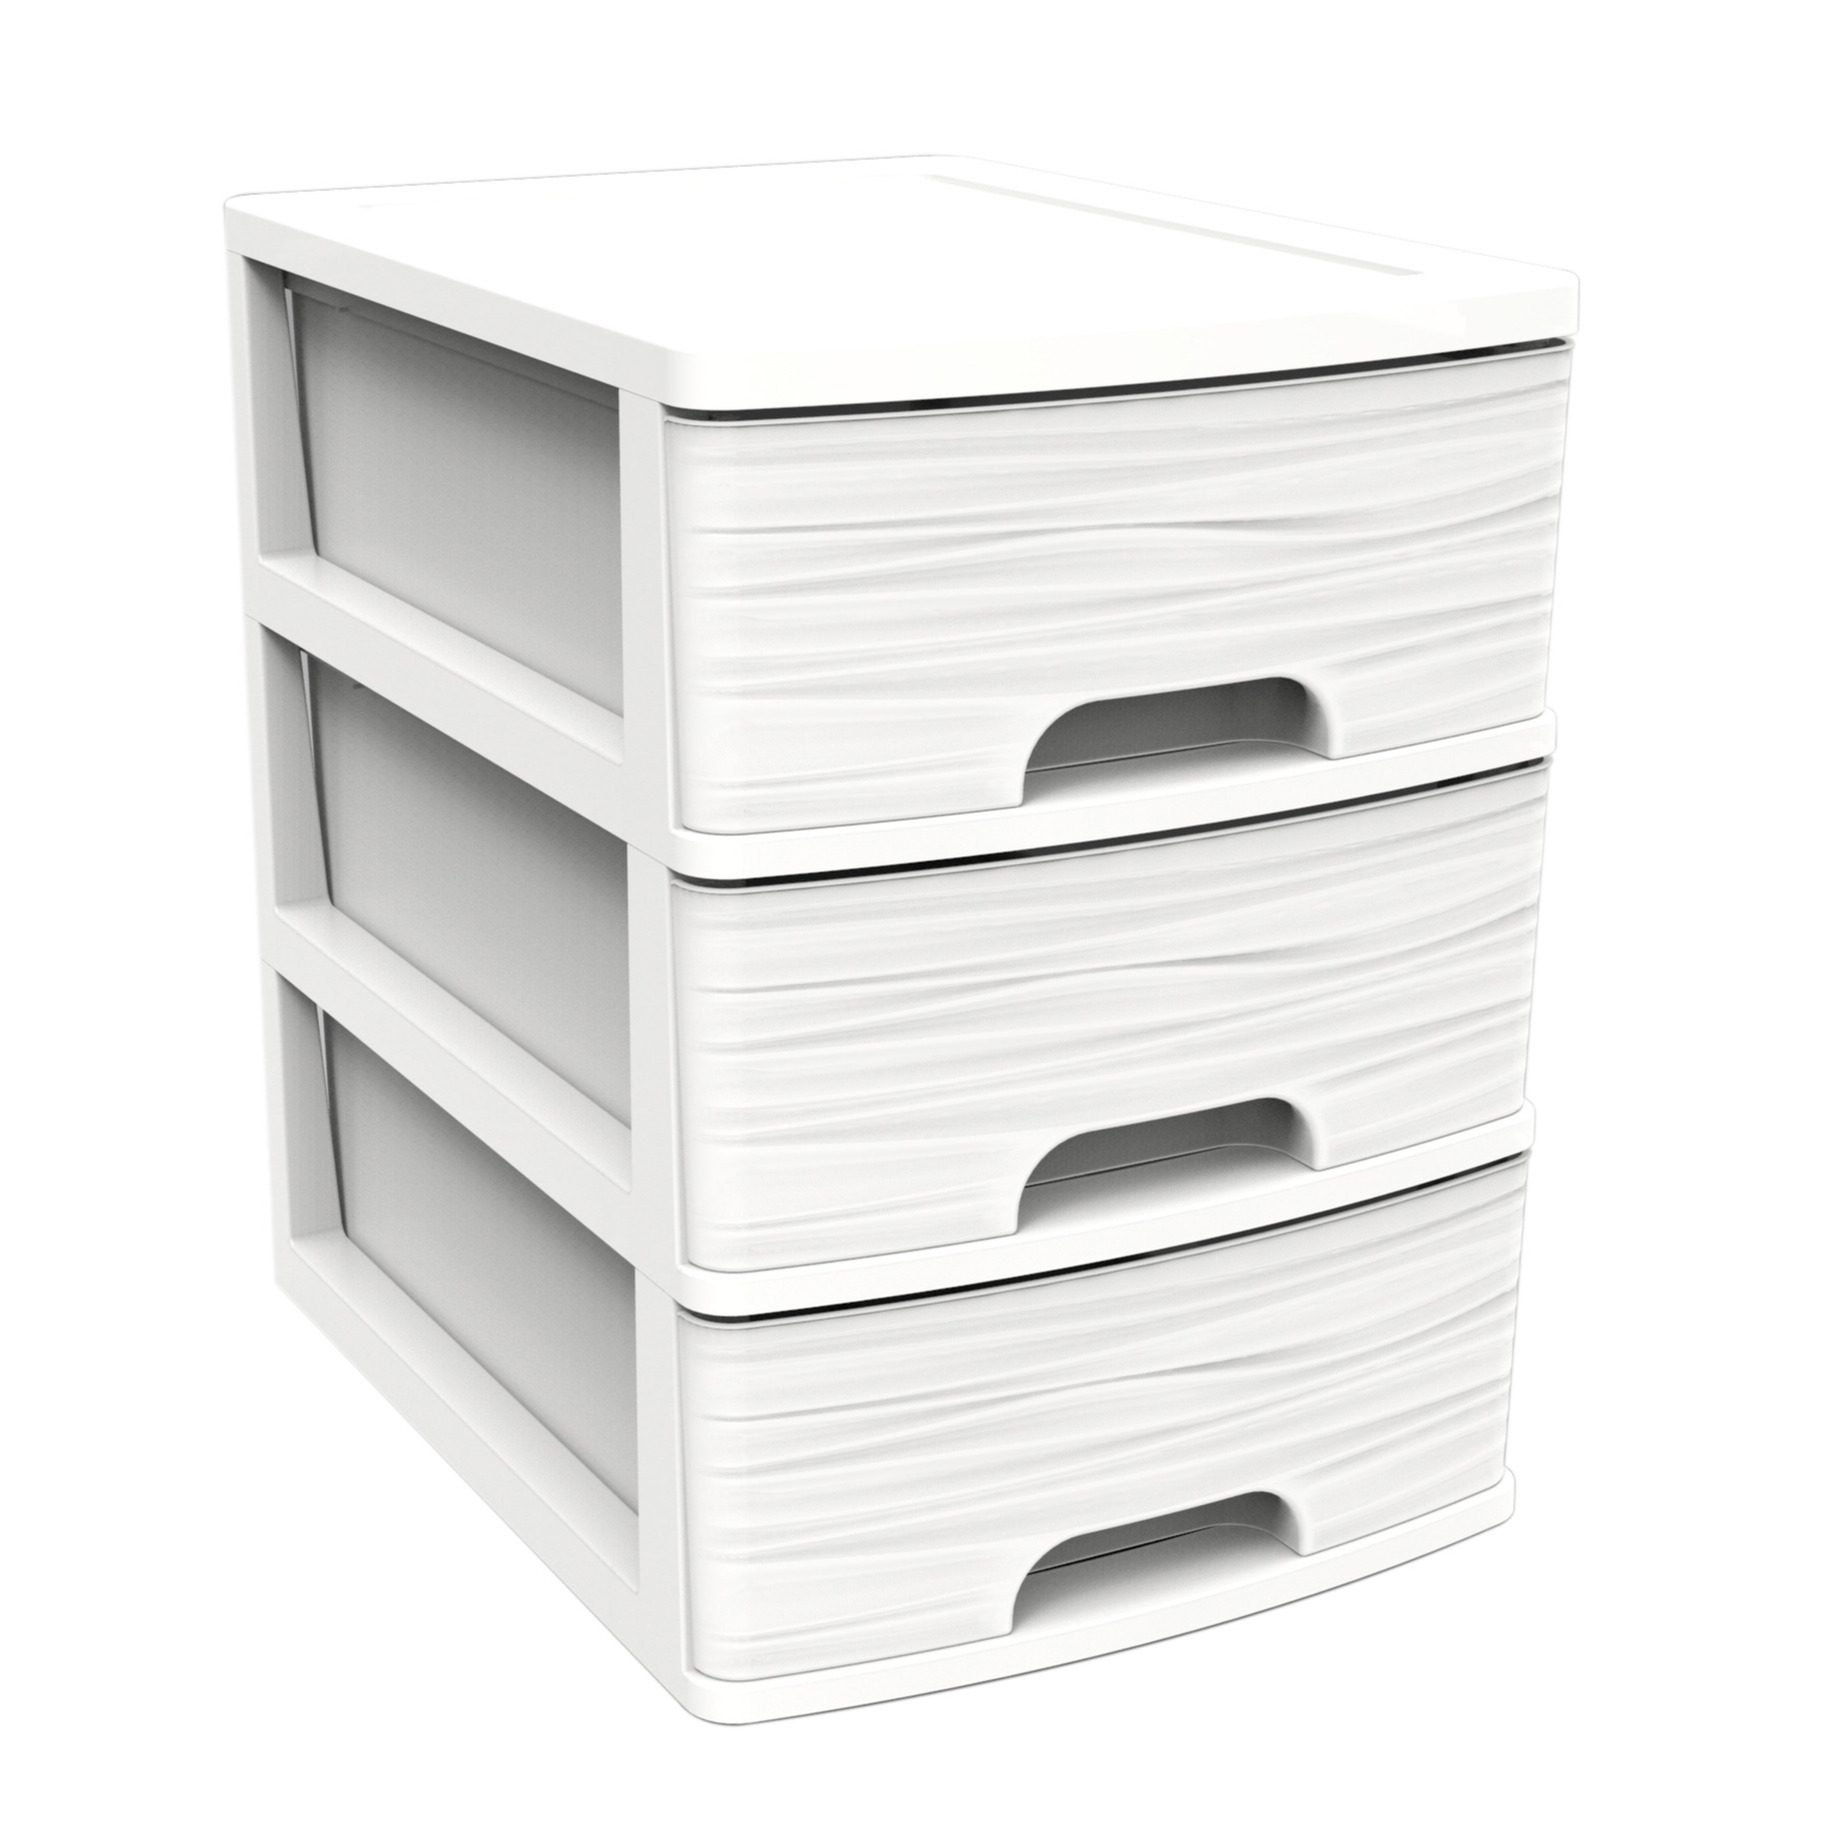 Ladenkast-bureau organizer wit A5 3x lades stapelbaar L27 x B36 x H35 cm